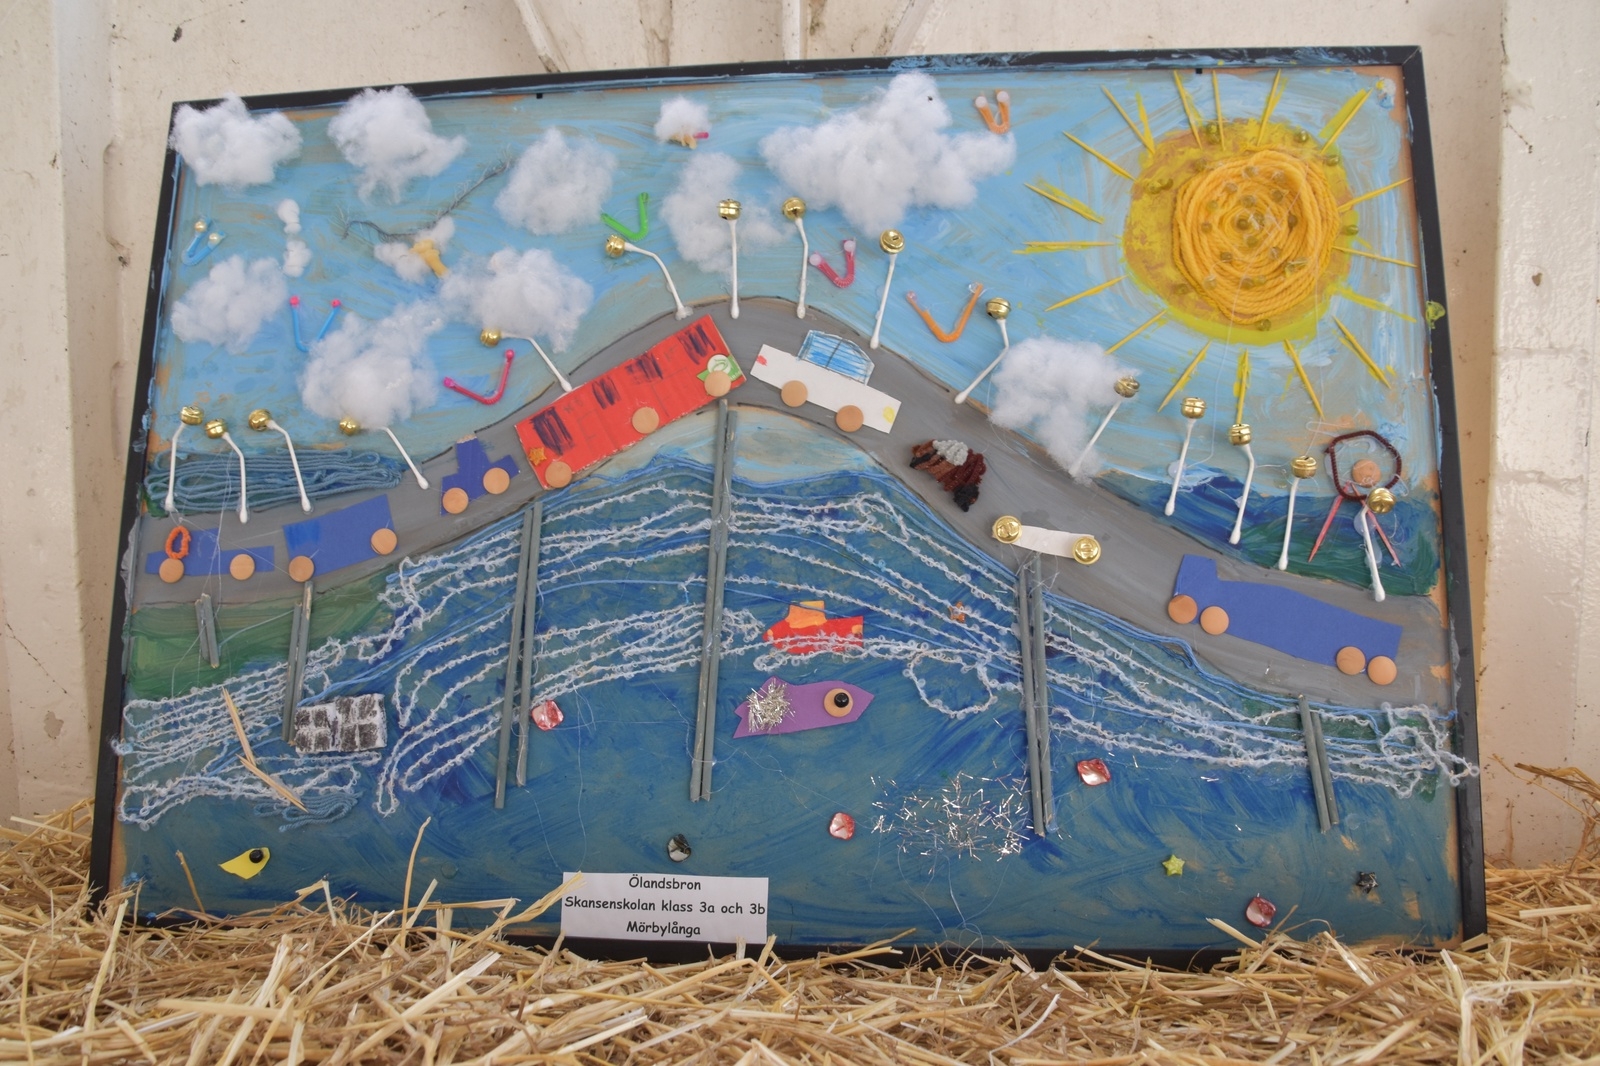 Olika skolor bidrog med konstverk med temat"Ölandsbron".